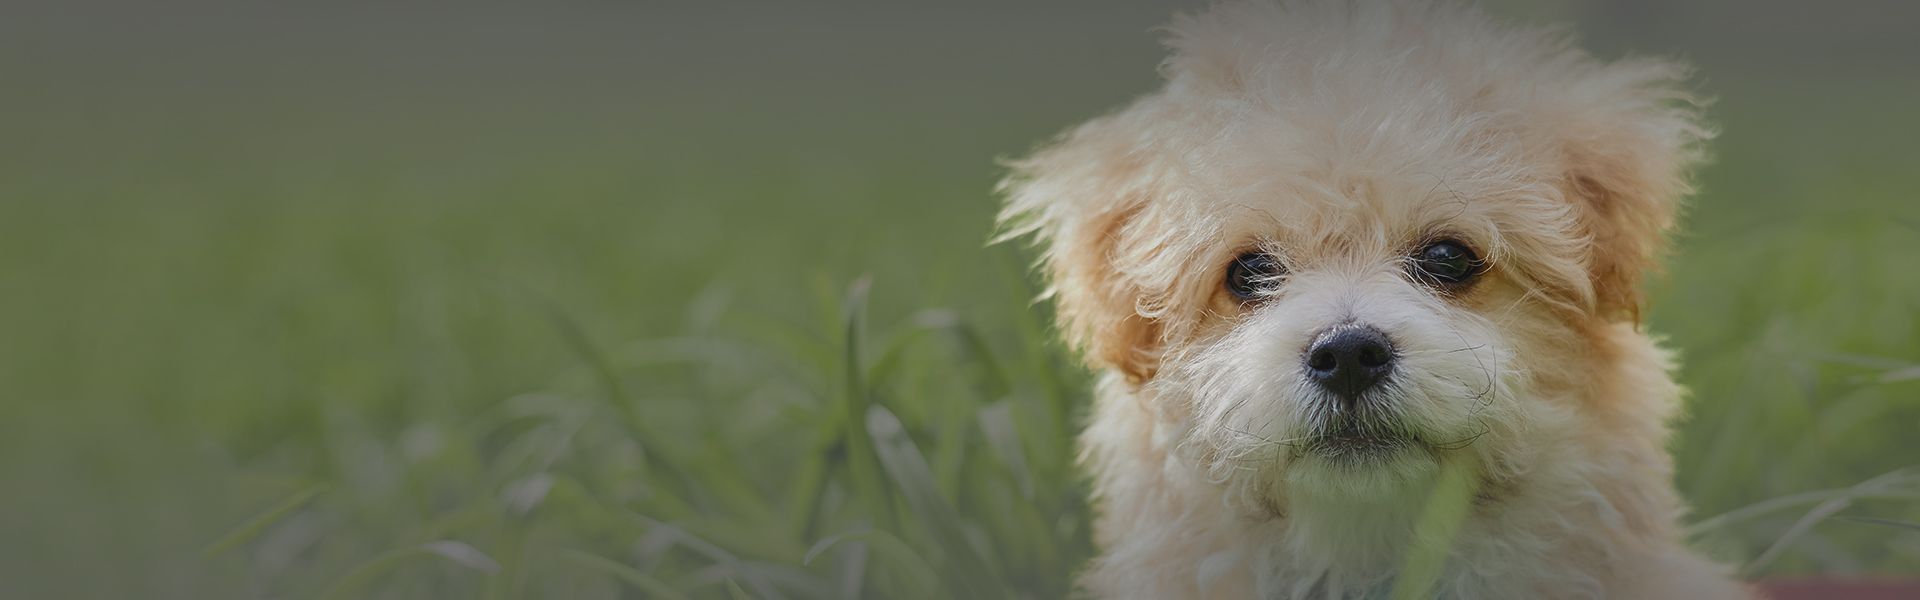 little maltipoo puppy amoung green grass